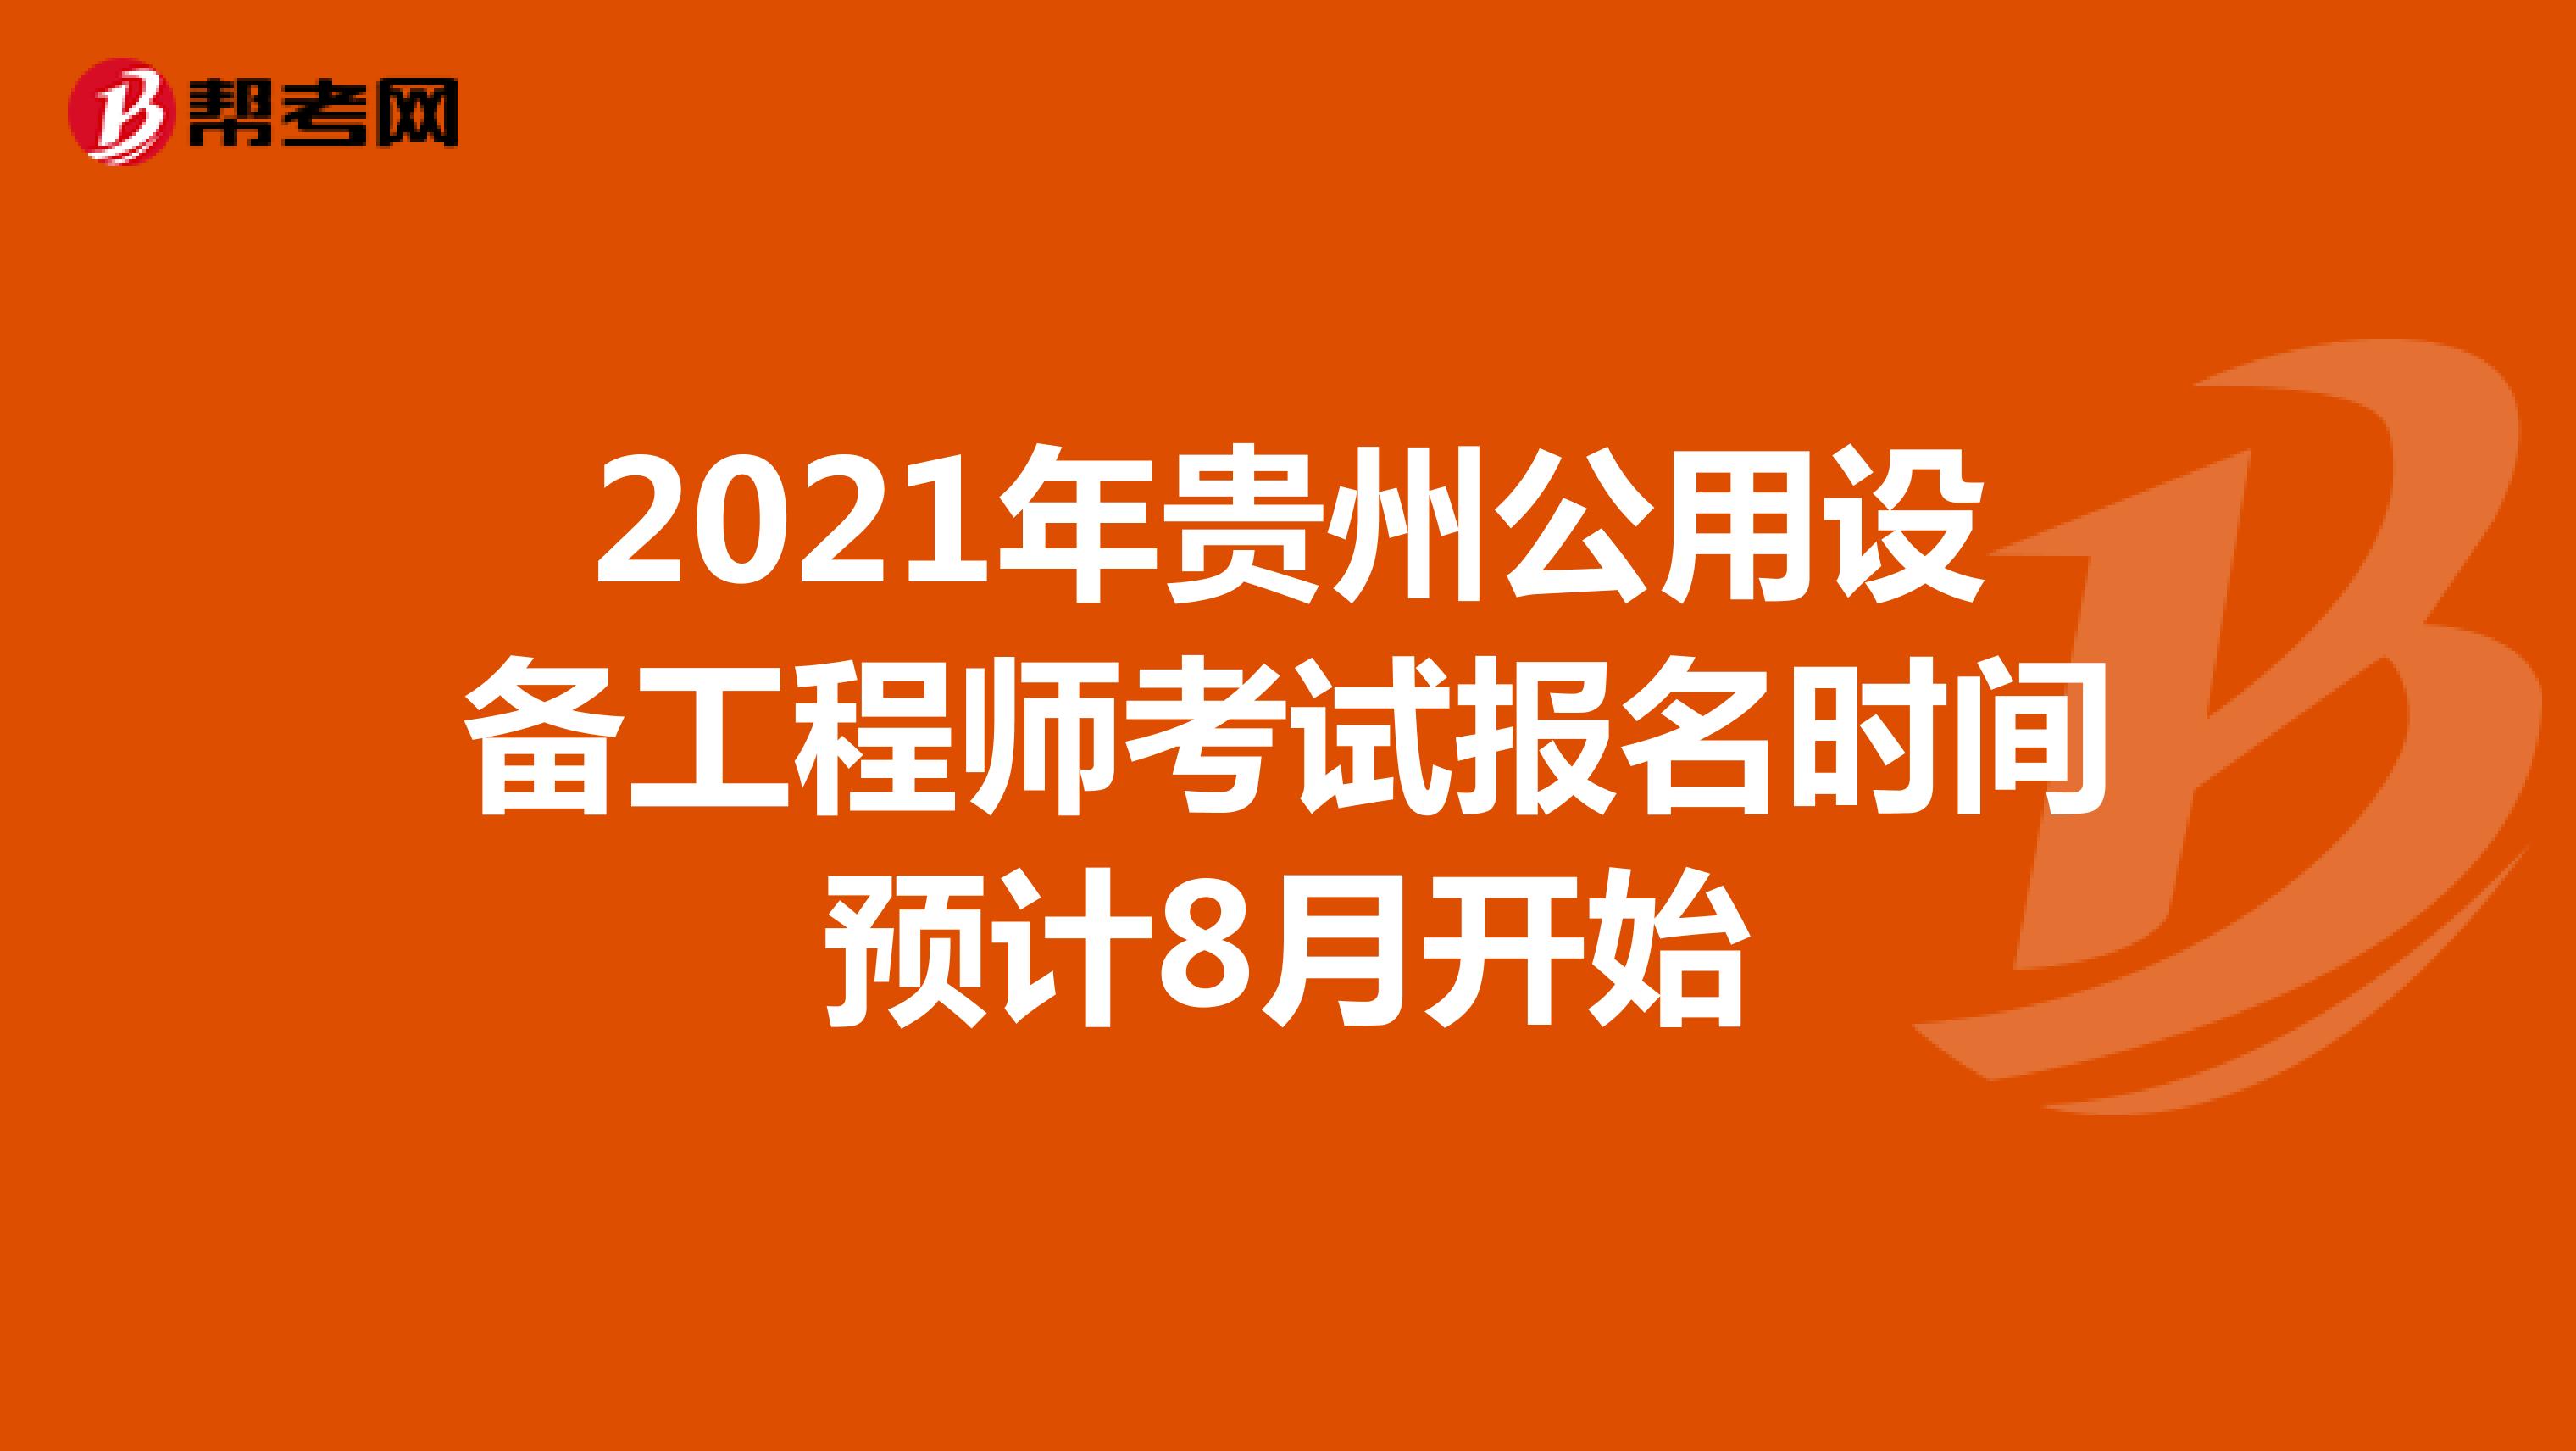 2021年贵州公用设备工程师考试报名时间预计8月开始